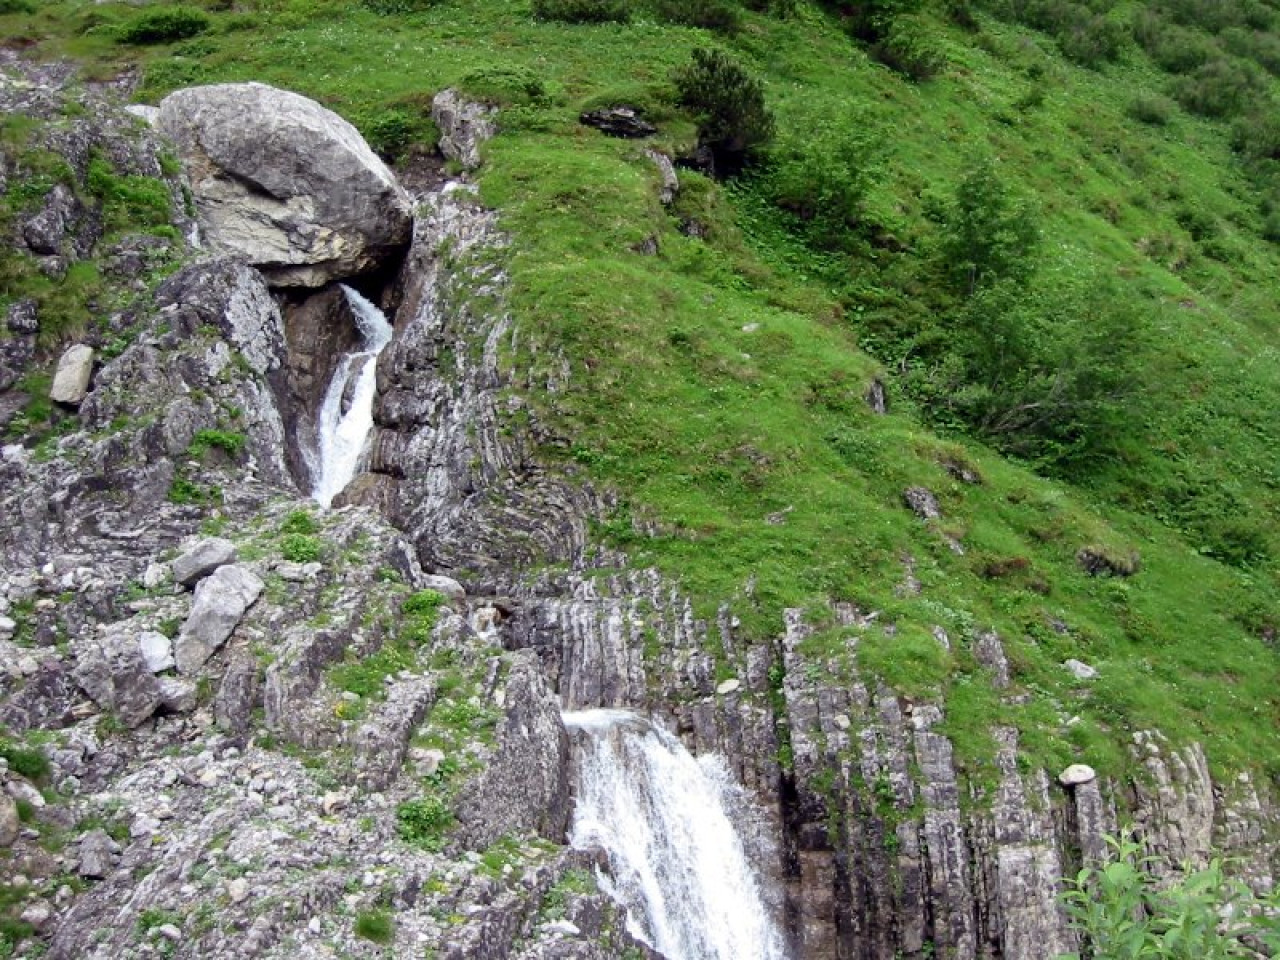  Wasserfall Sulzltal